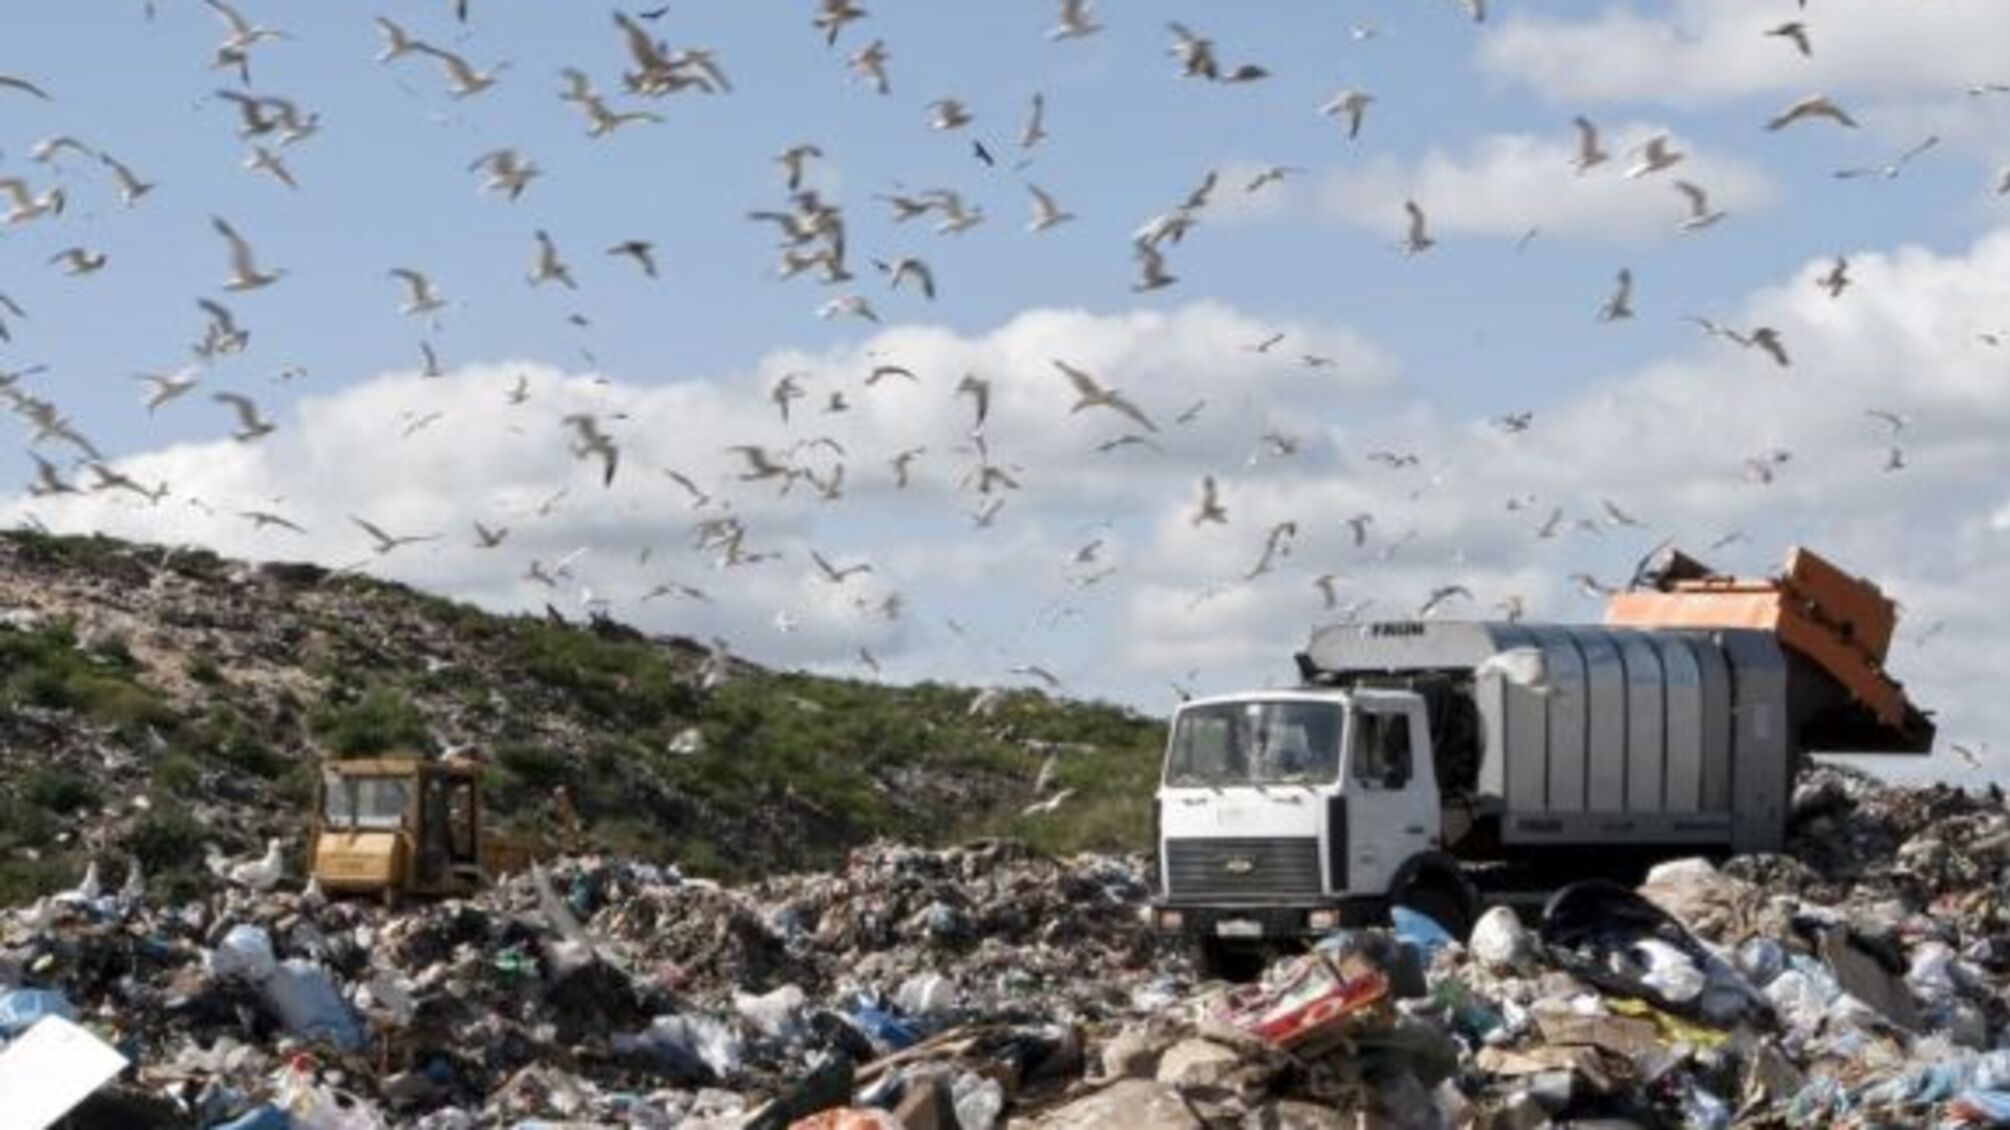 У Марганці через корупційні схеми влади мешканці потерпають від стихійного сміттєзвалища